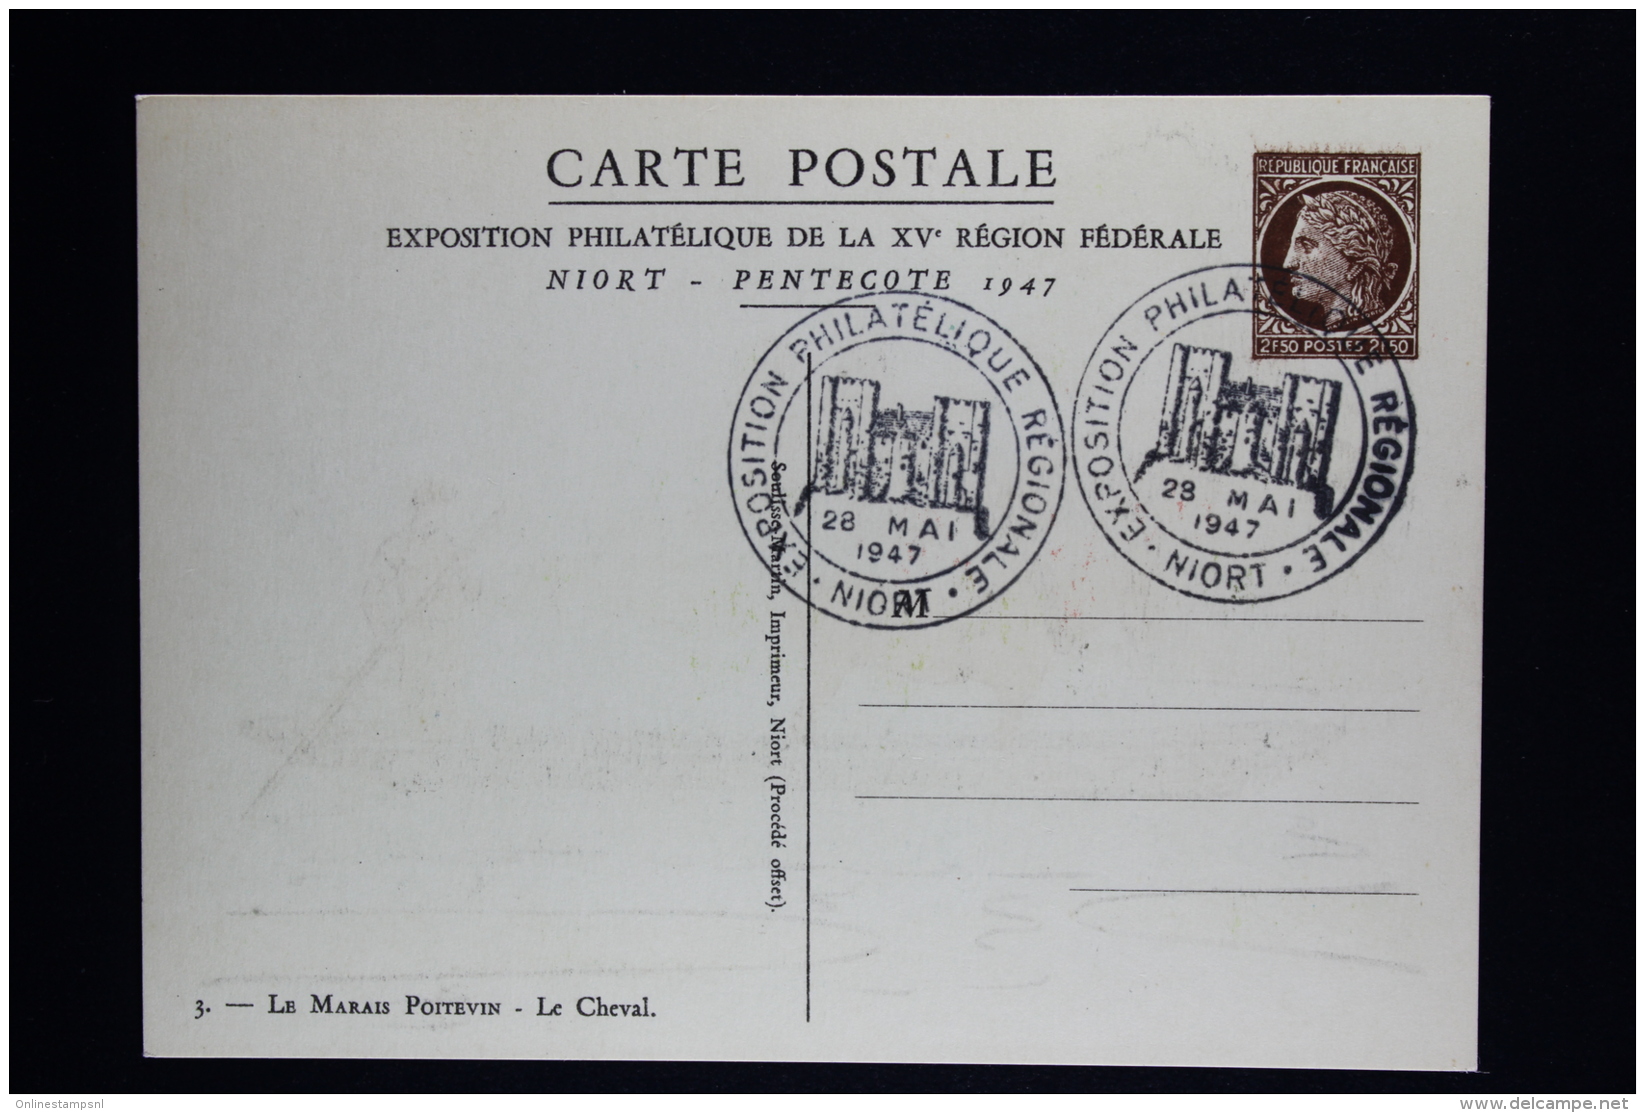 France Carte Postale Ceres de Mazelin Type  C2 S La série de 4 cartes  1947  oblitérées au verso